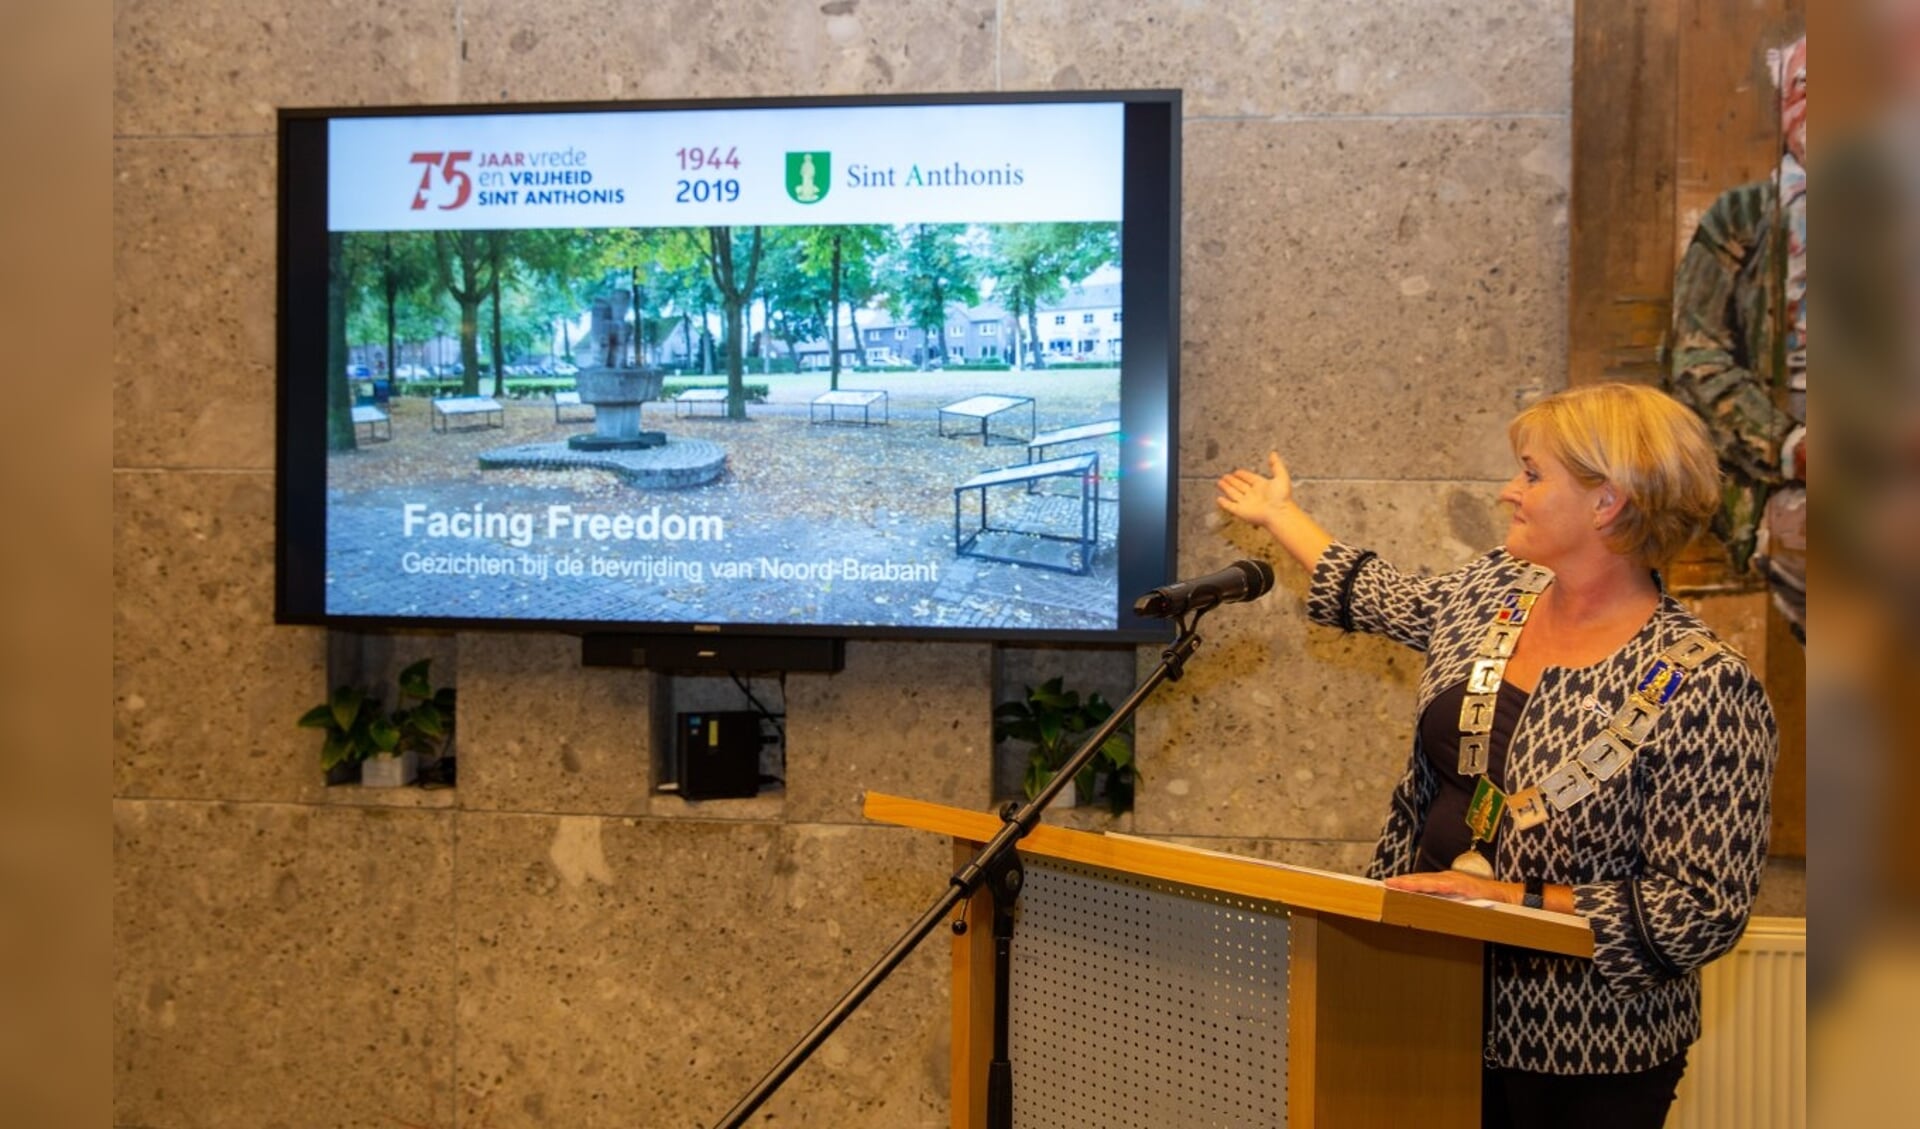 Burgemeester Marleen Sijbers van Sint Anthonis opende de expositie 'Facing Freedom'.